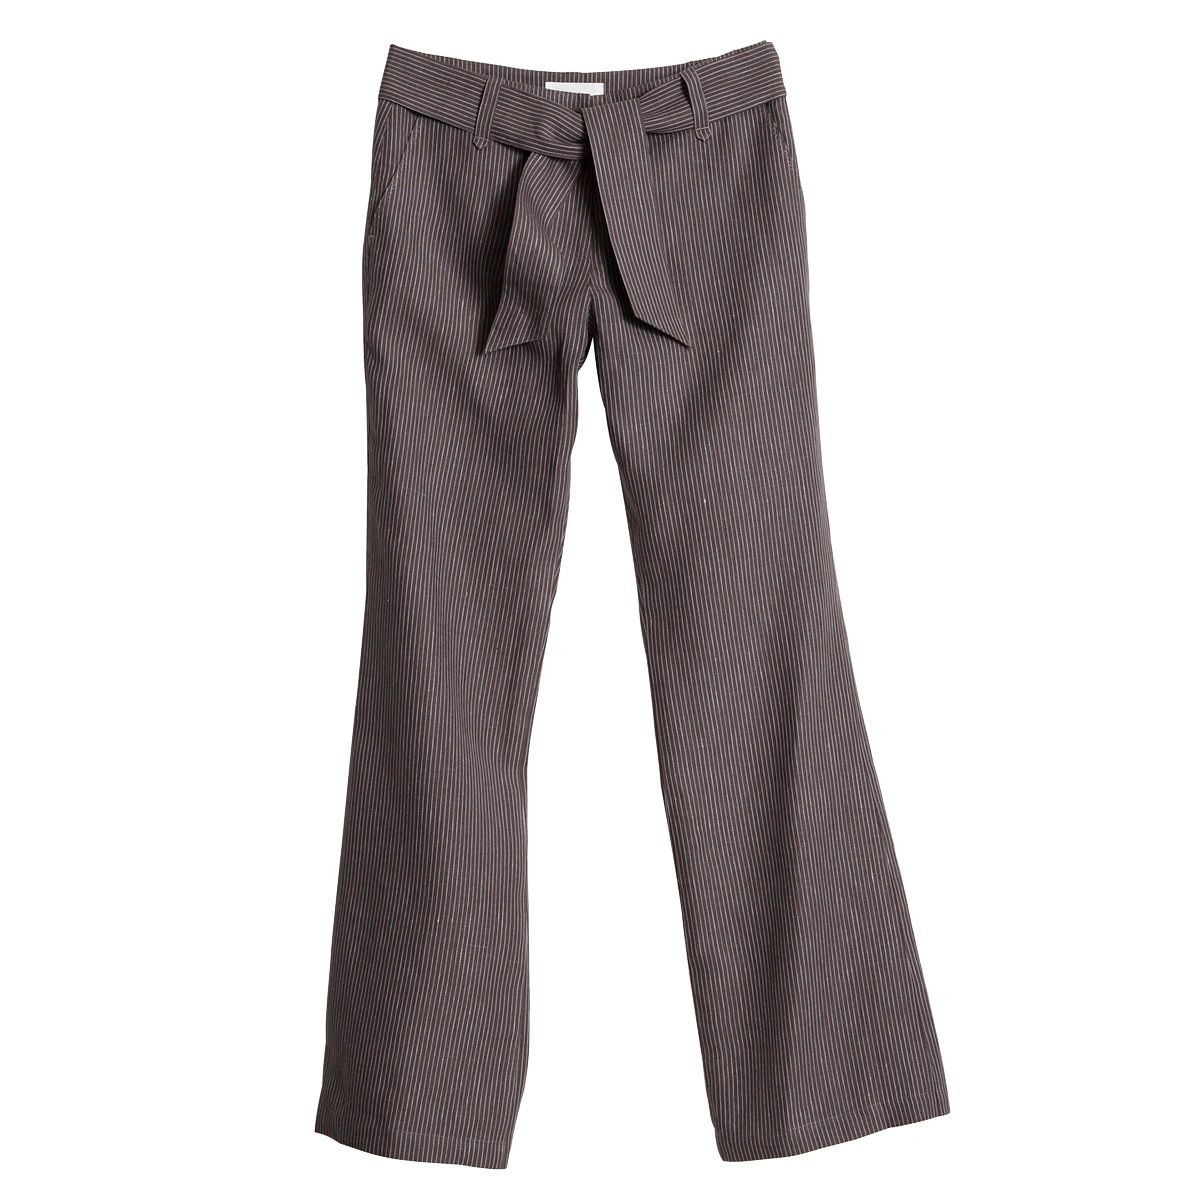 Women linen pants, wide waist and under